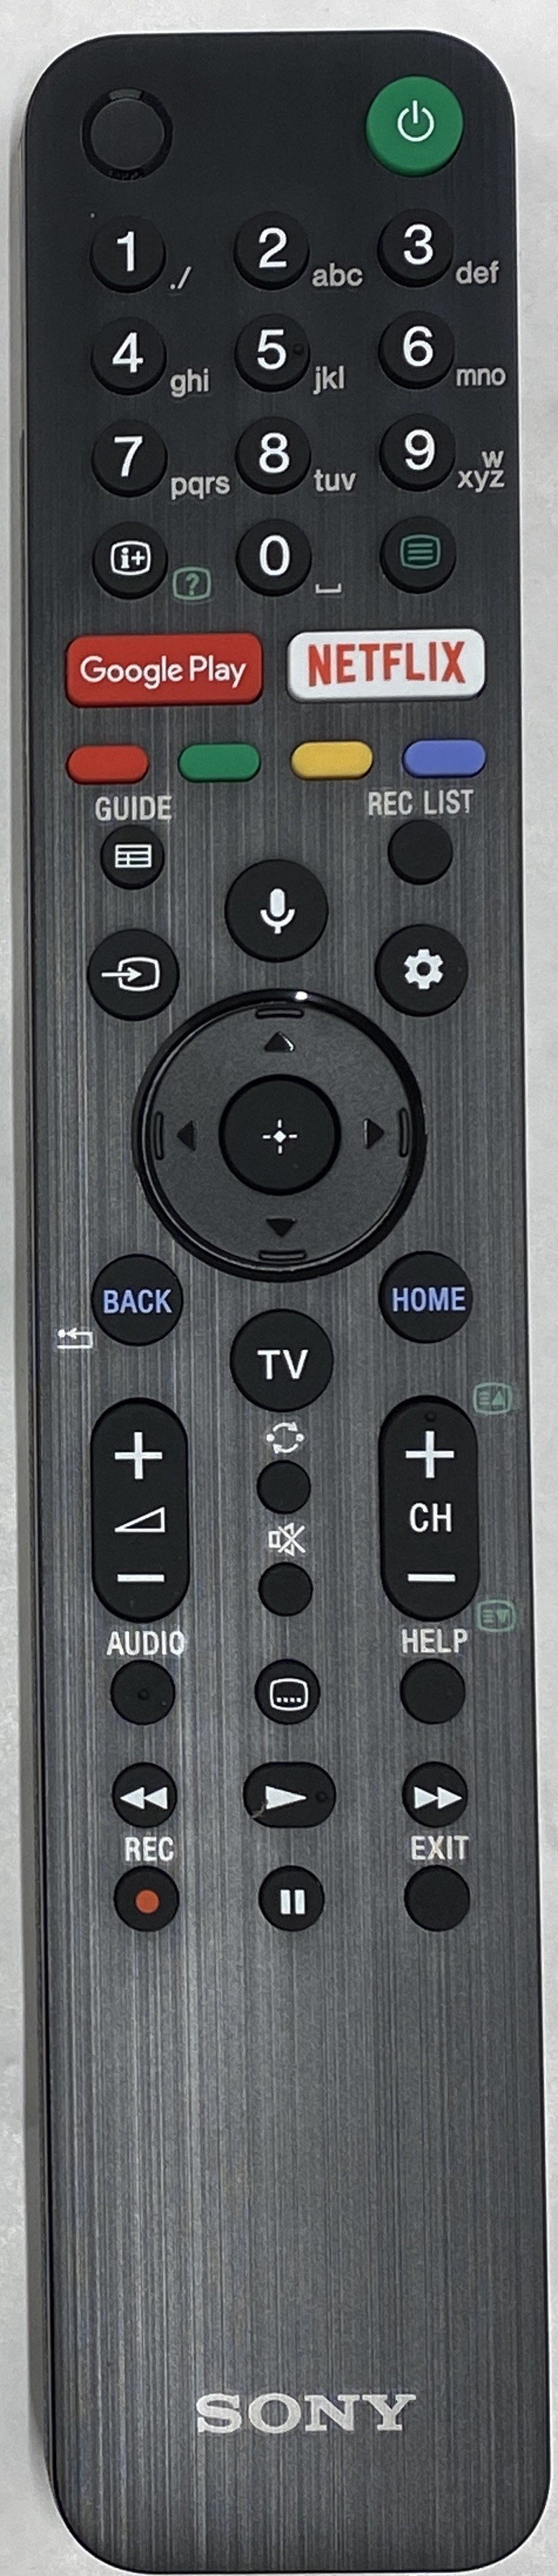 SONY RMF-TX500E Remote Control Original 